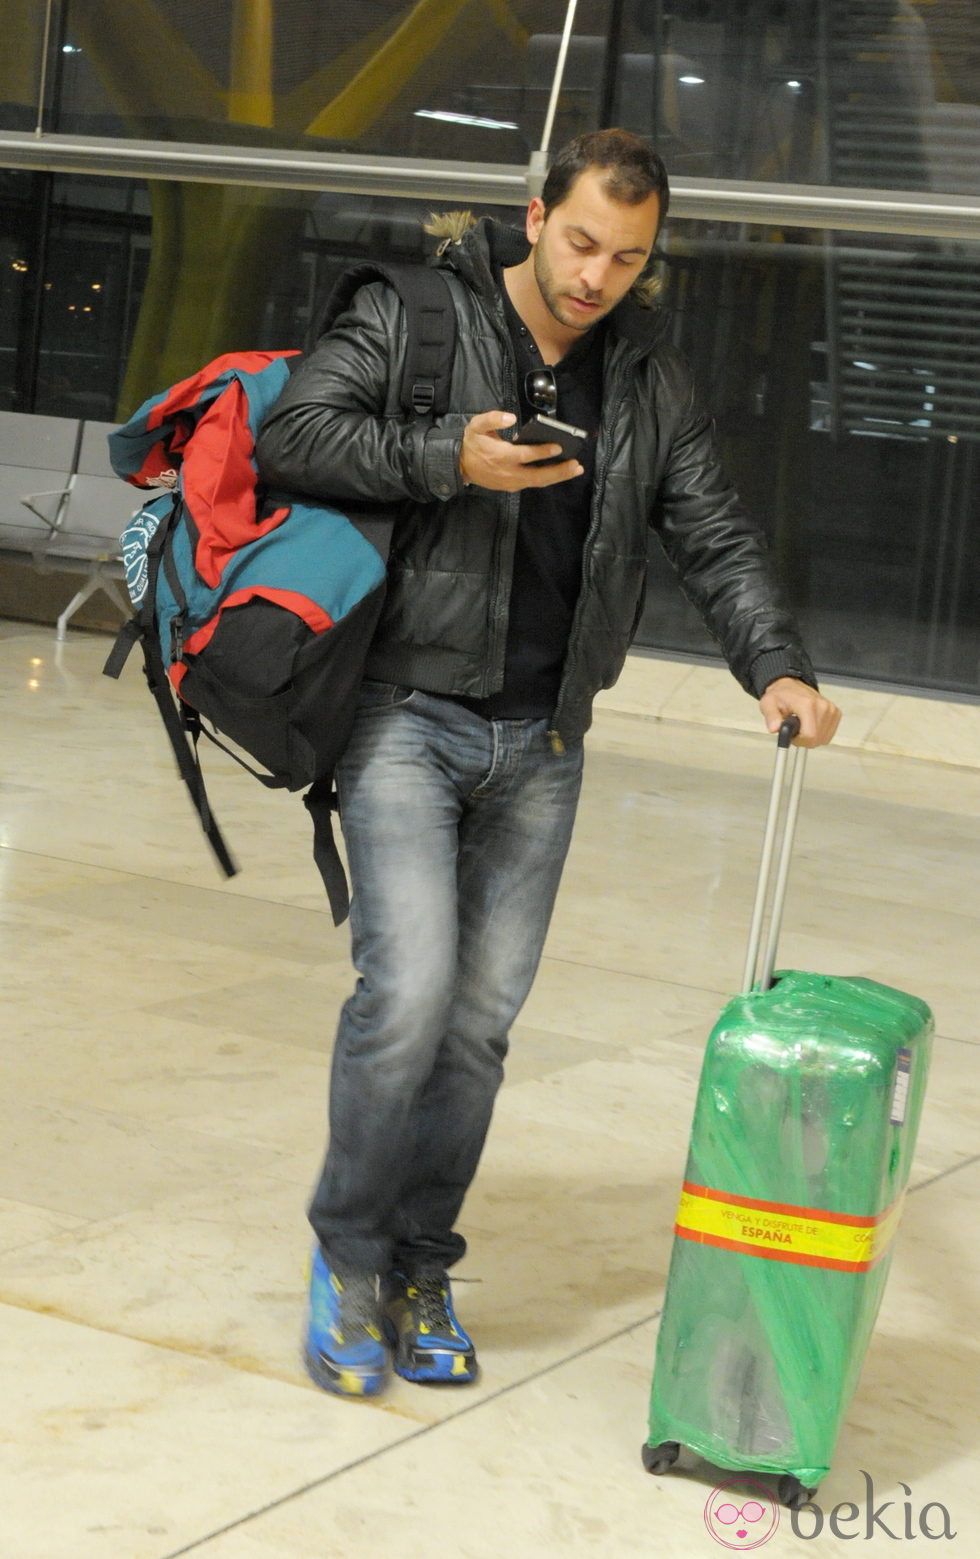 Antonio Tejado en el aeropuerto antes de irse a Honduras para participar en 'Supervivientes'